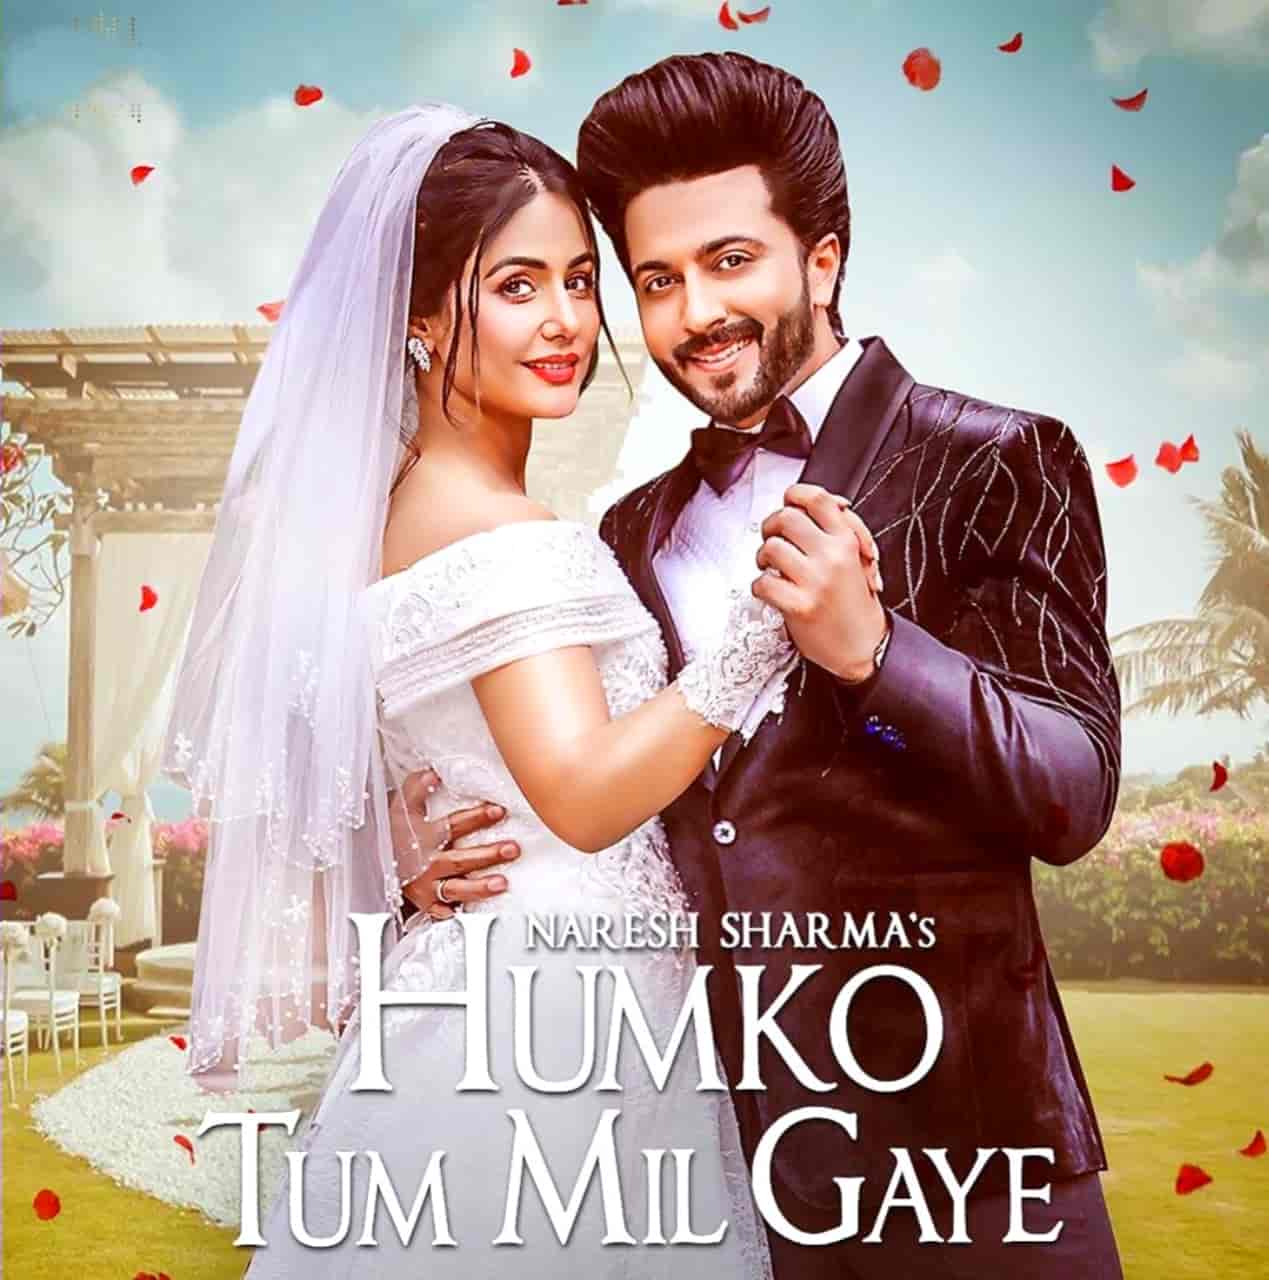 Humko Tum Mil Gaye Hindi Song Image Features Hina Khan & Dheeraj Dhoopar.